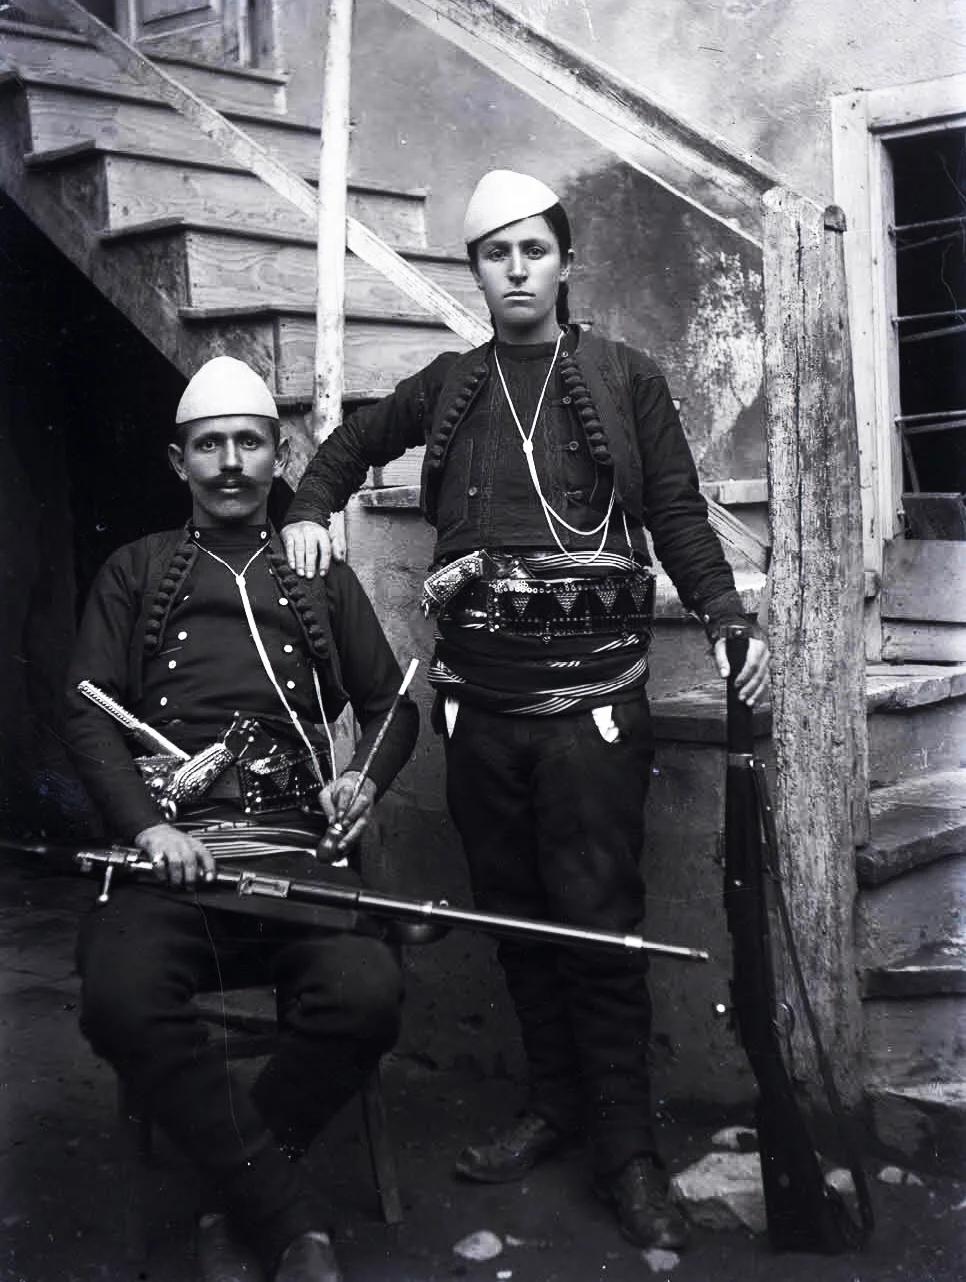 mężczyzna z wąsami i kobieta z warkoczem w tradycyjnych albańskich nakryciach głowy przypominających skorupkę jajka i w mundurach, pod bronią